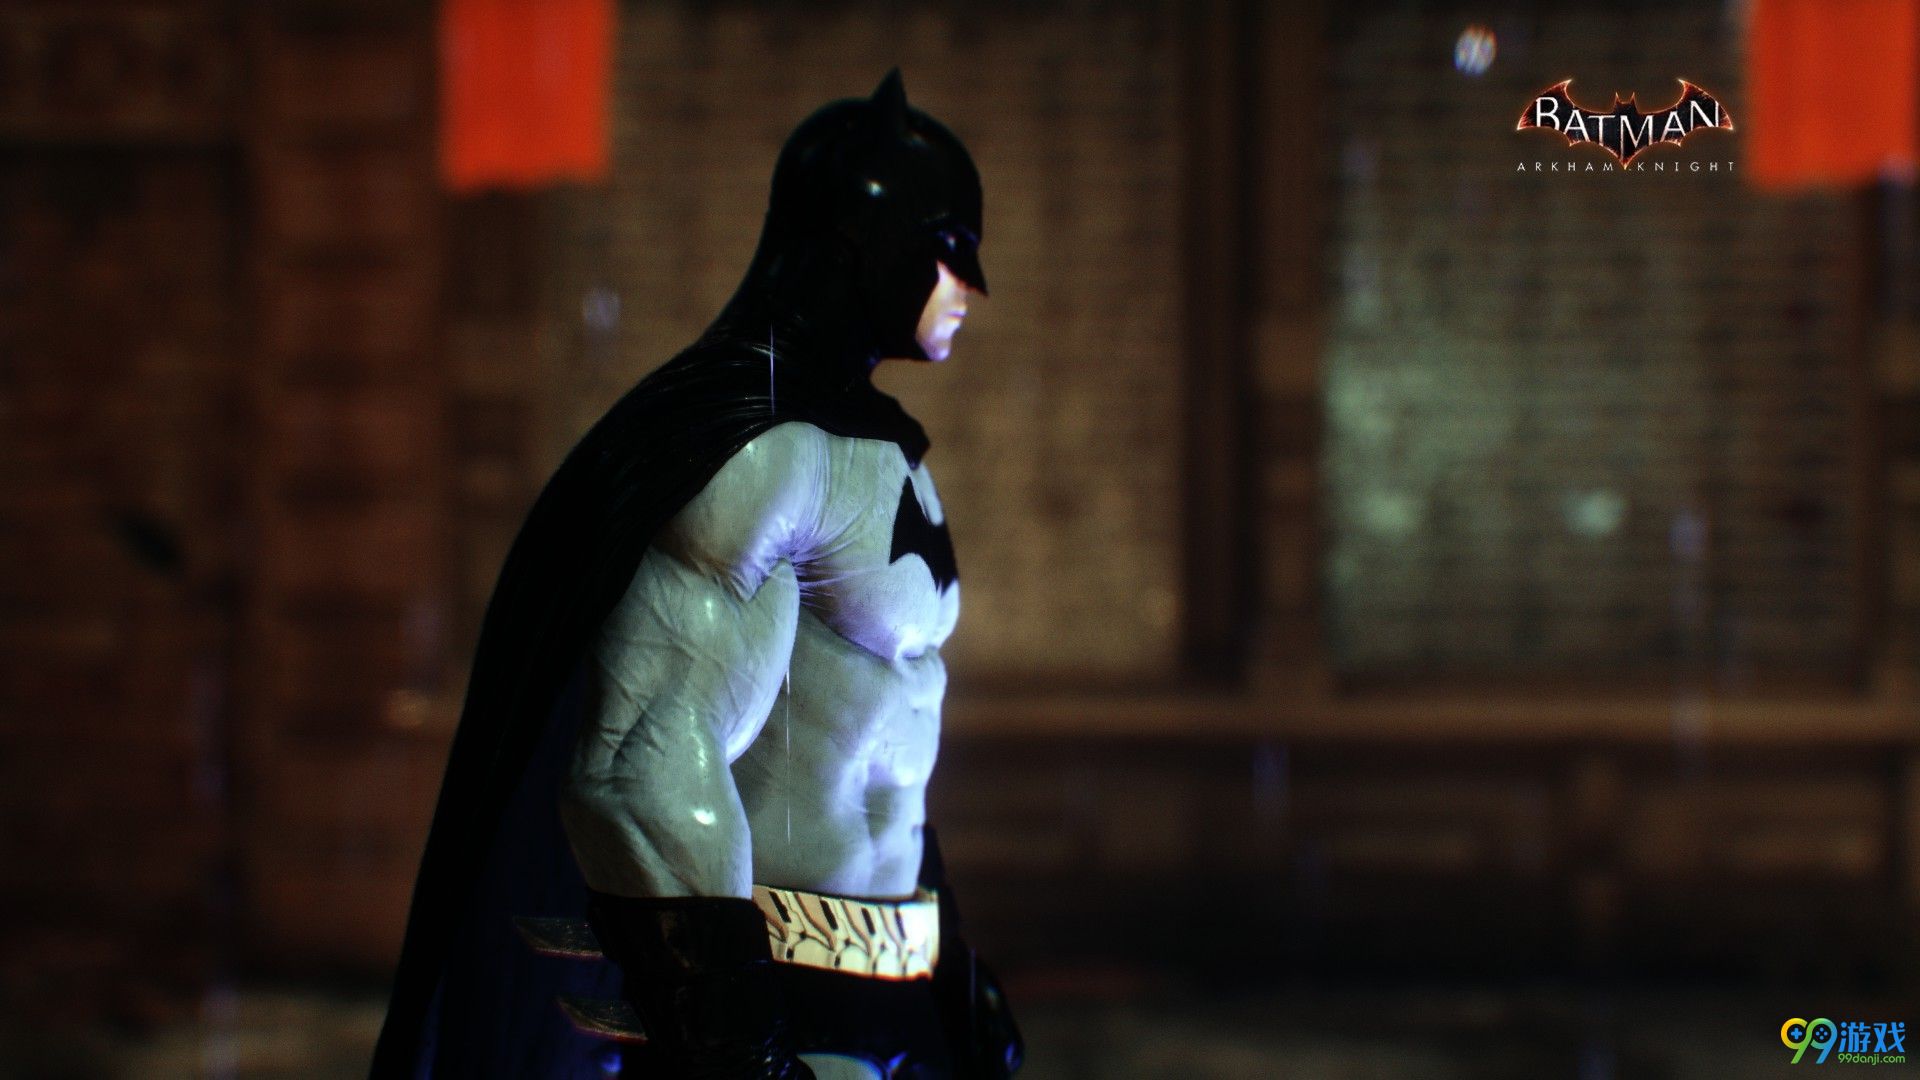 蝙蝠侠阿卡姆骑士照片模式截图美如画 每一帧都是壁纸级别！